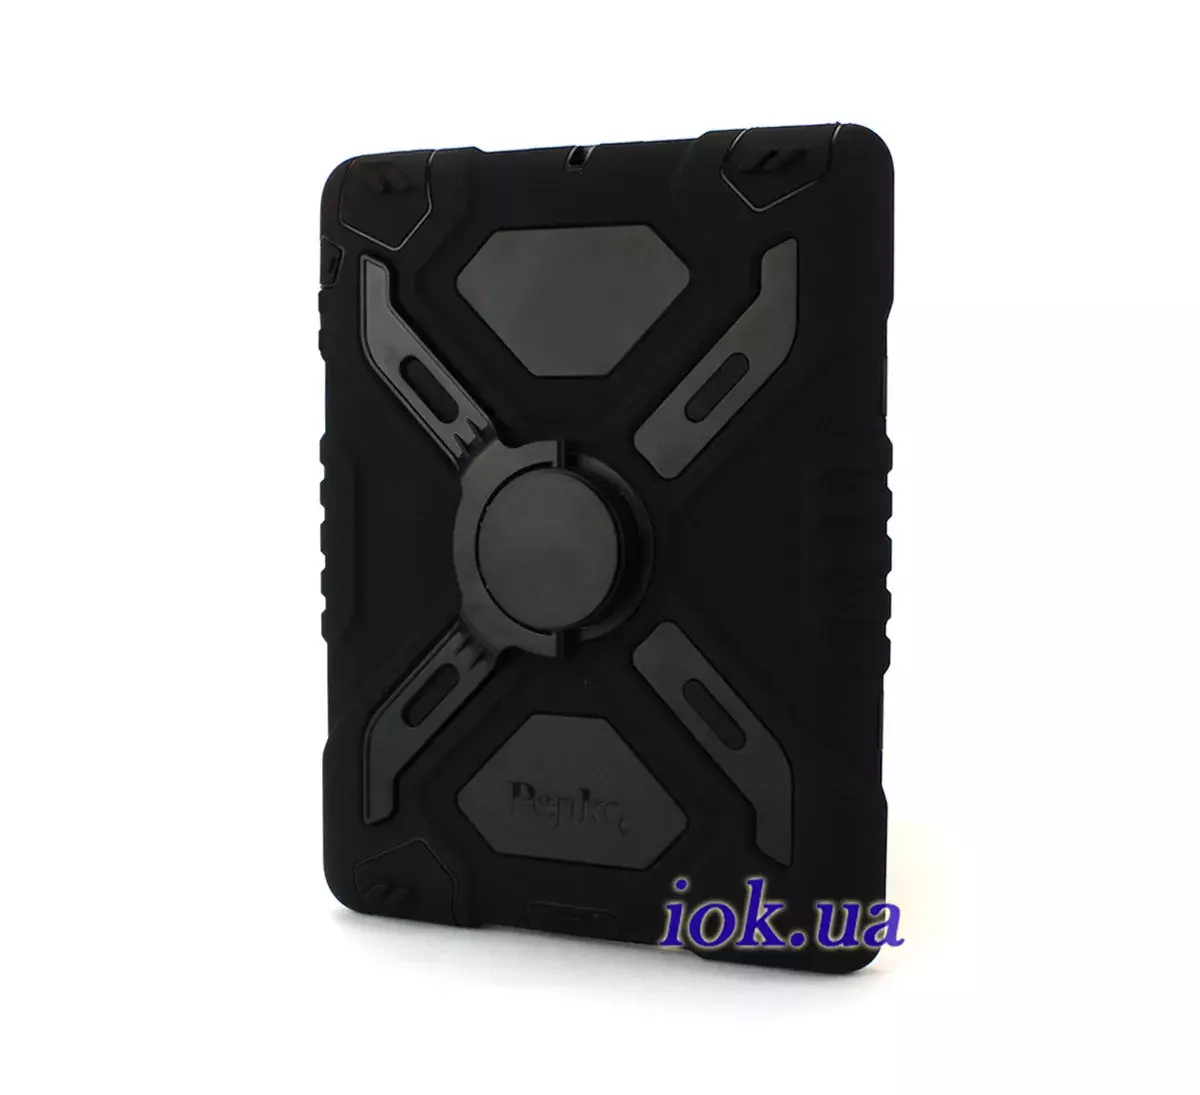 Защитный чехол для iPad Air - Pepkoo, черный